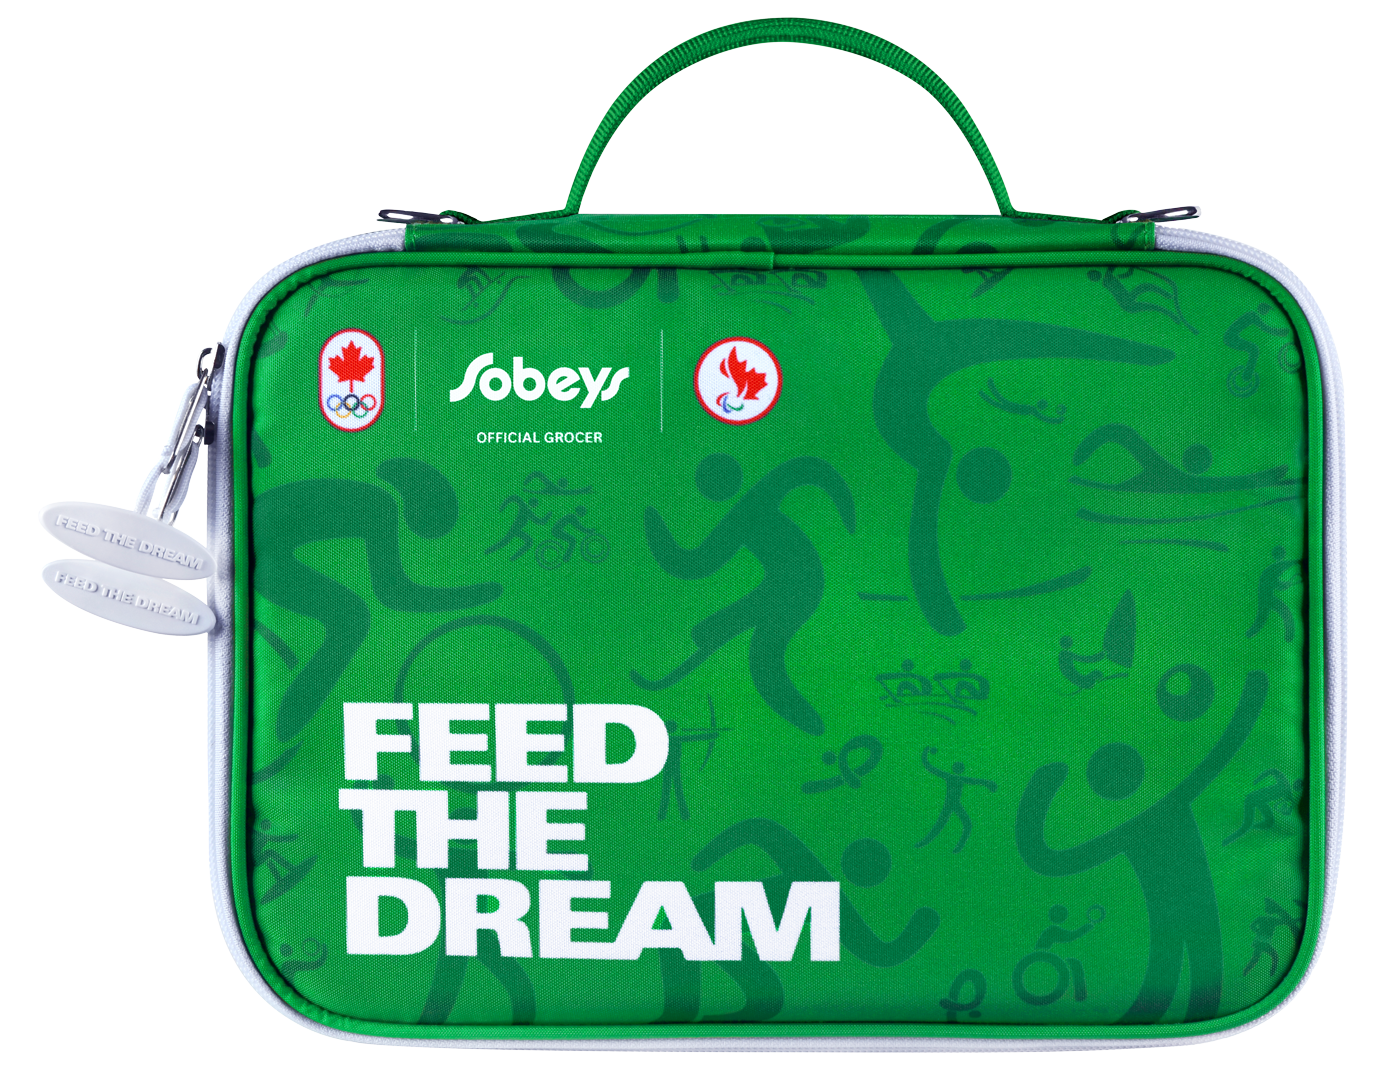 An image of Sobeys Bag